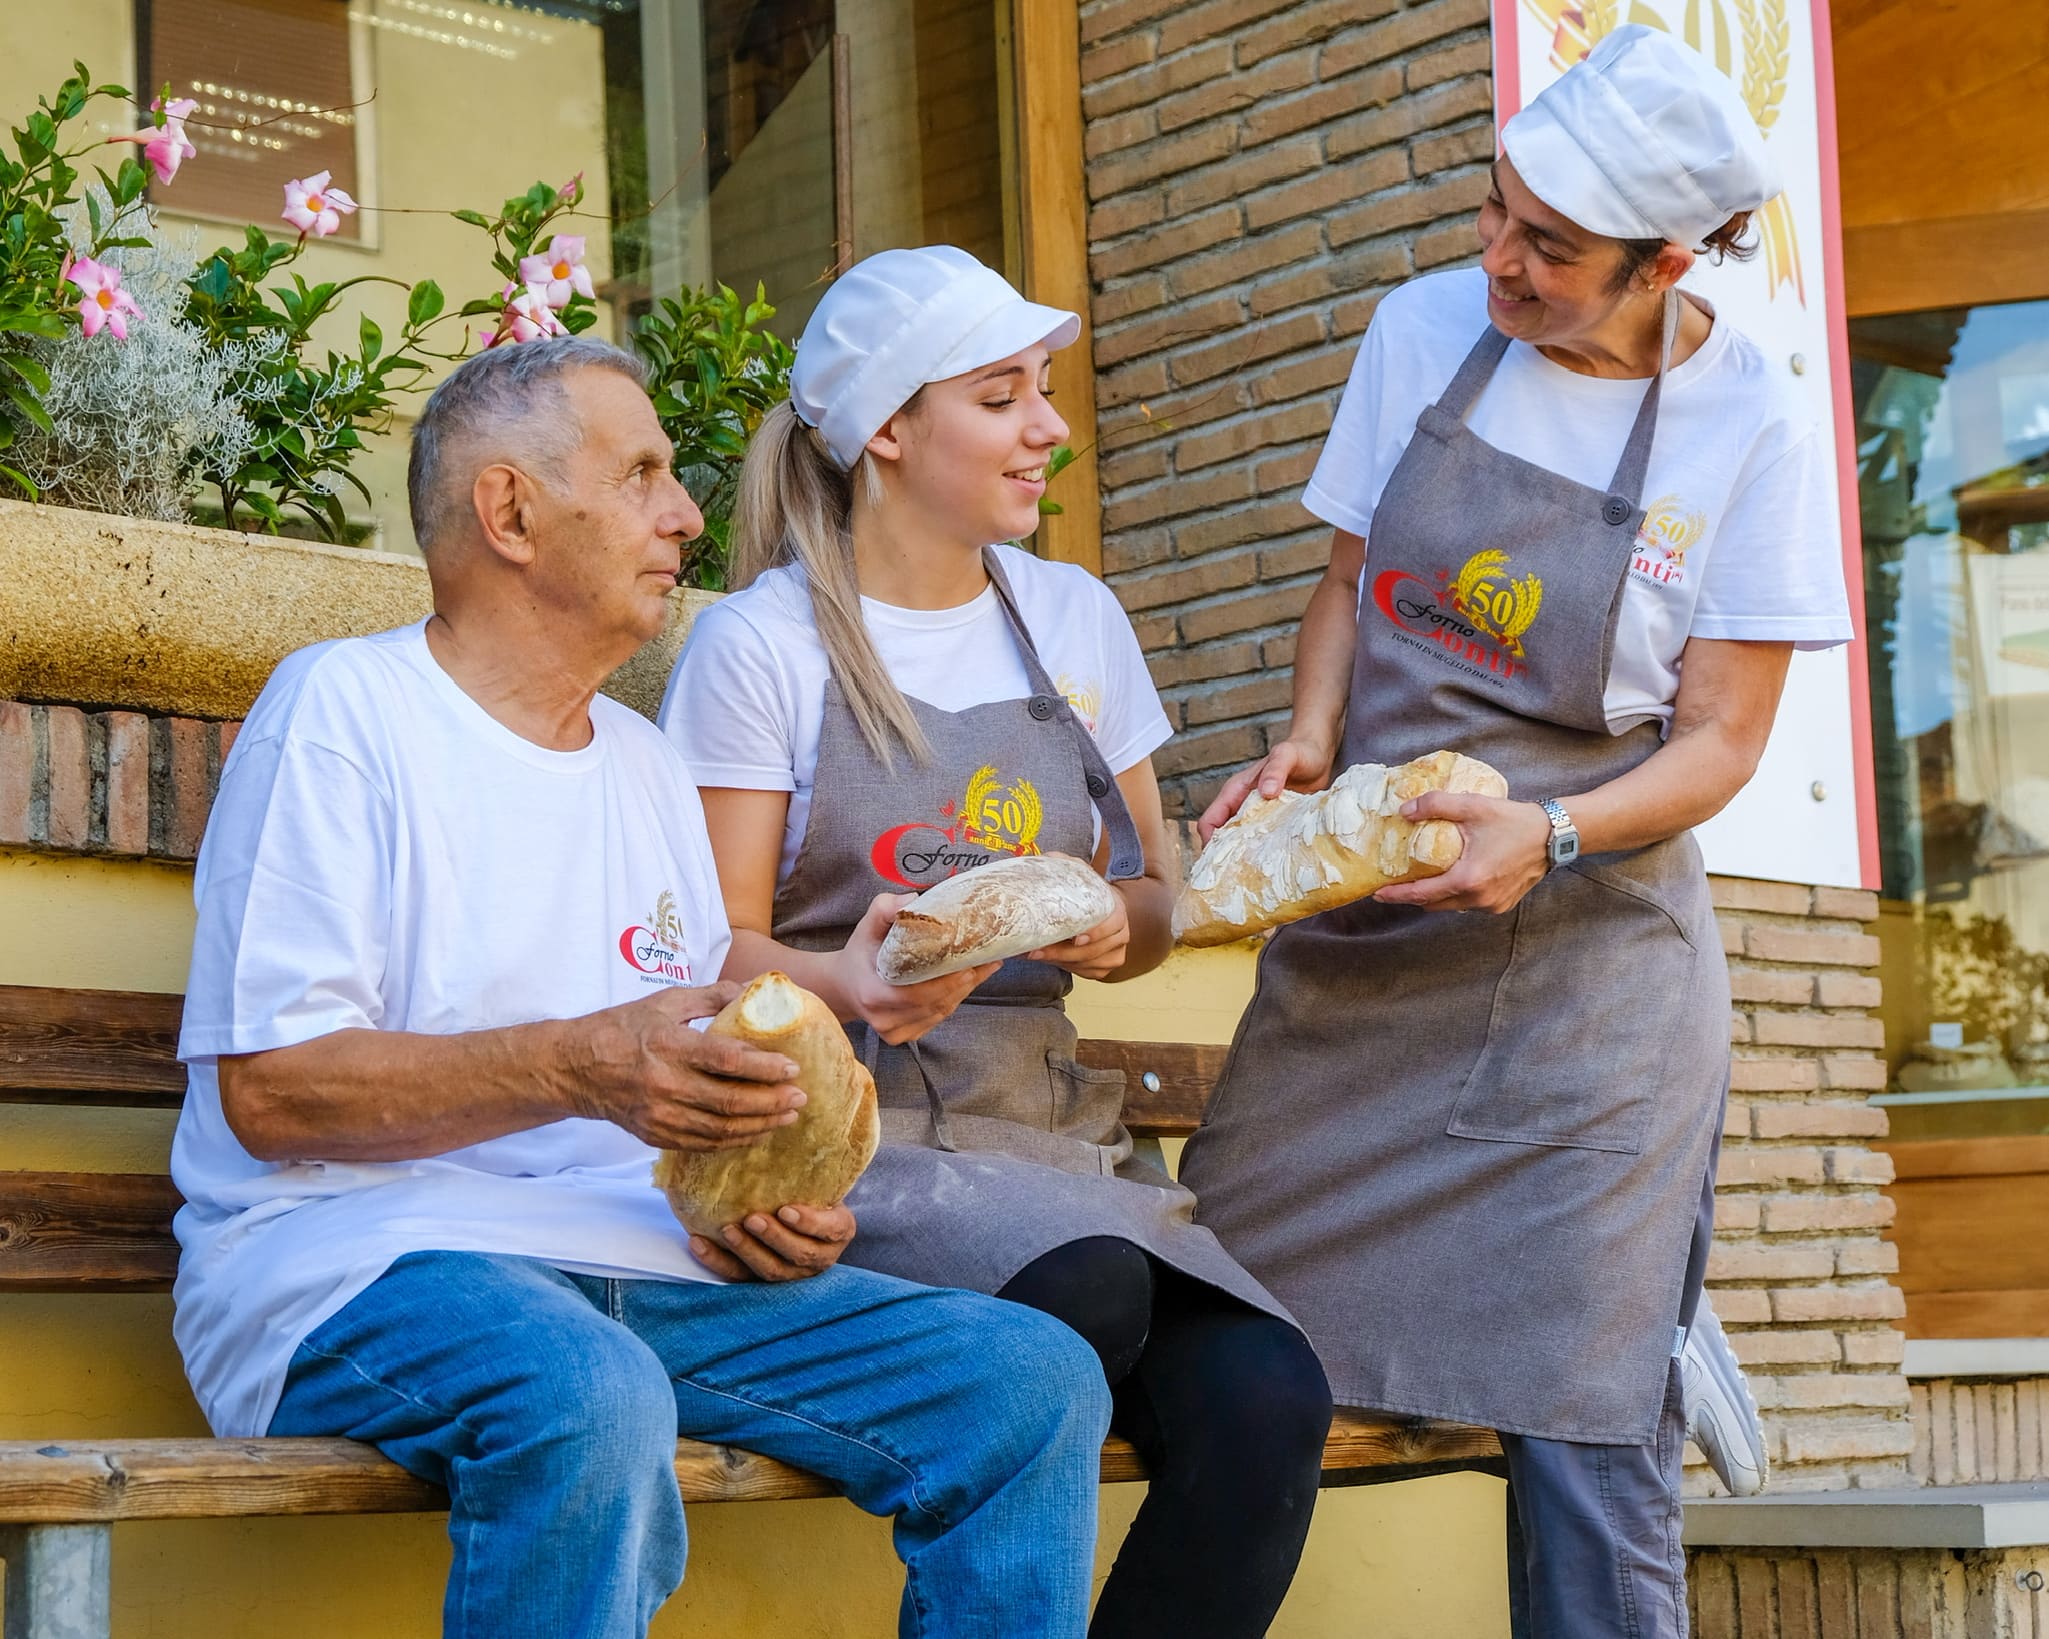 Il Forno Conti e la tradizione del pane artigianale